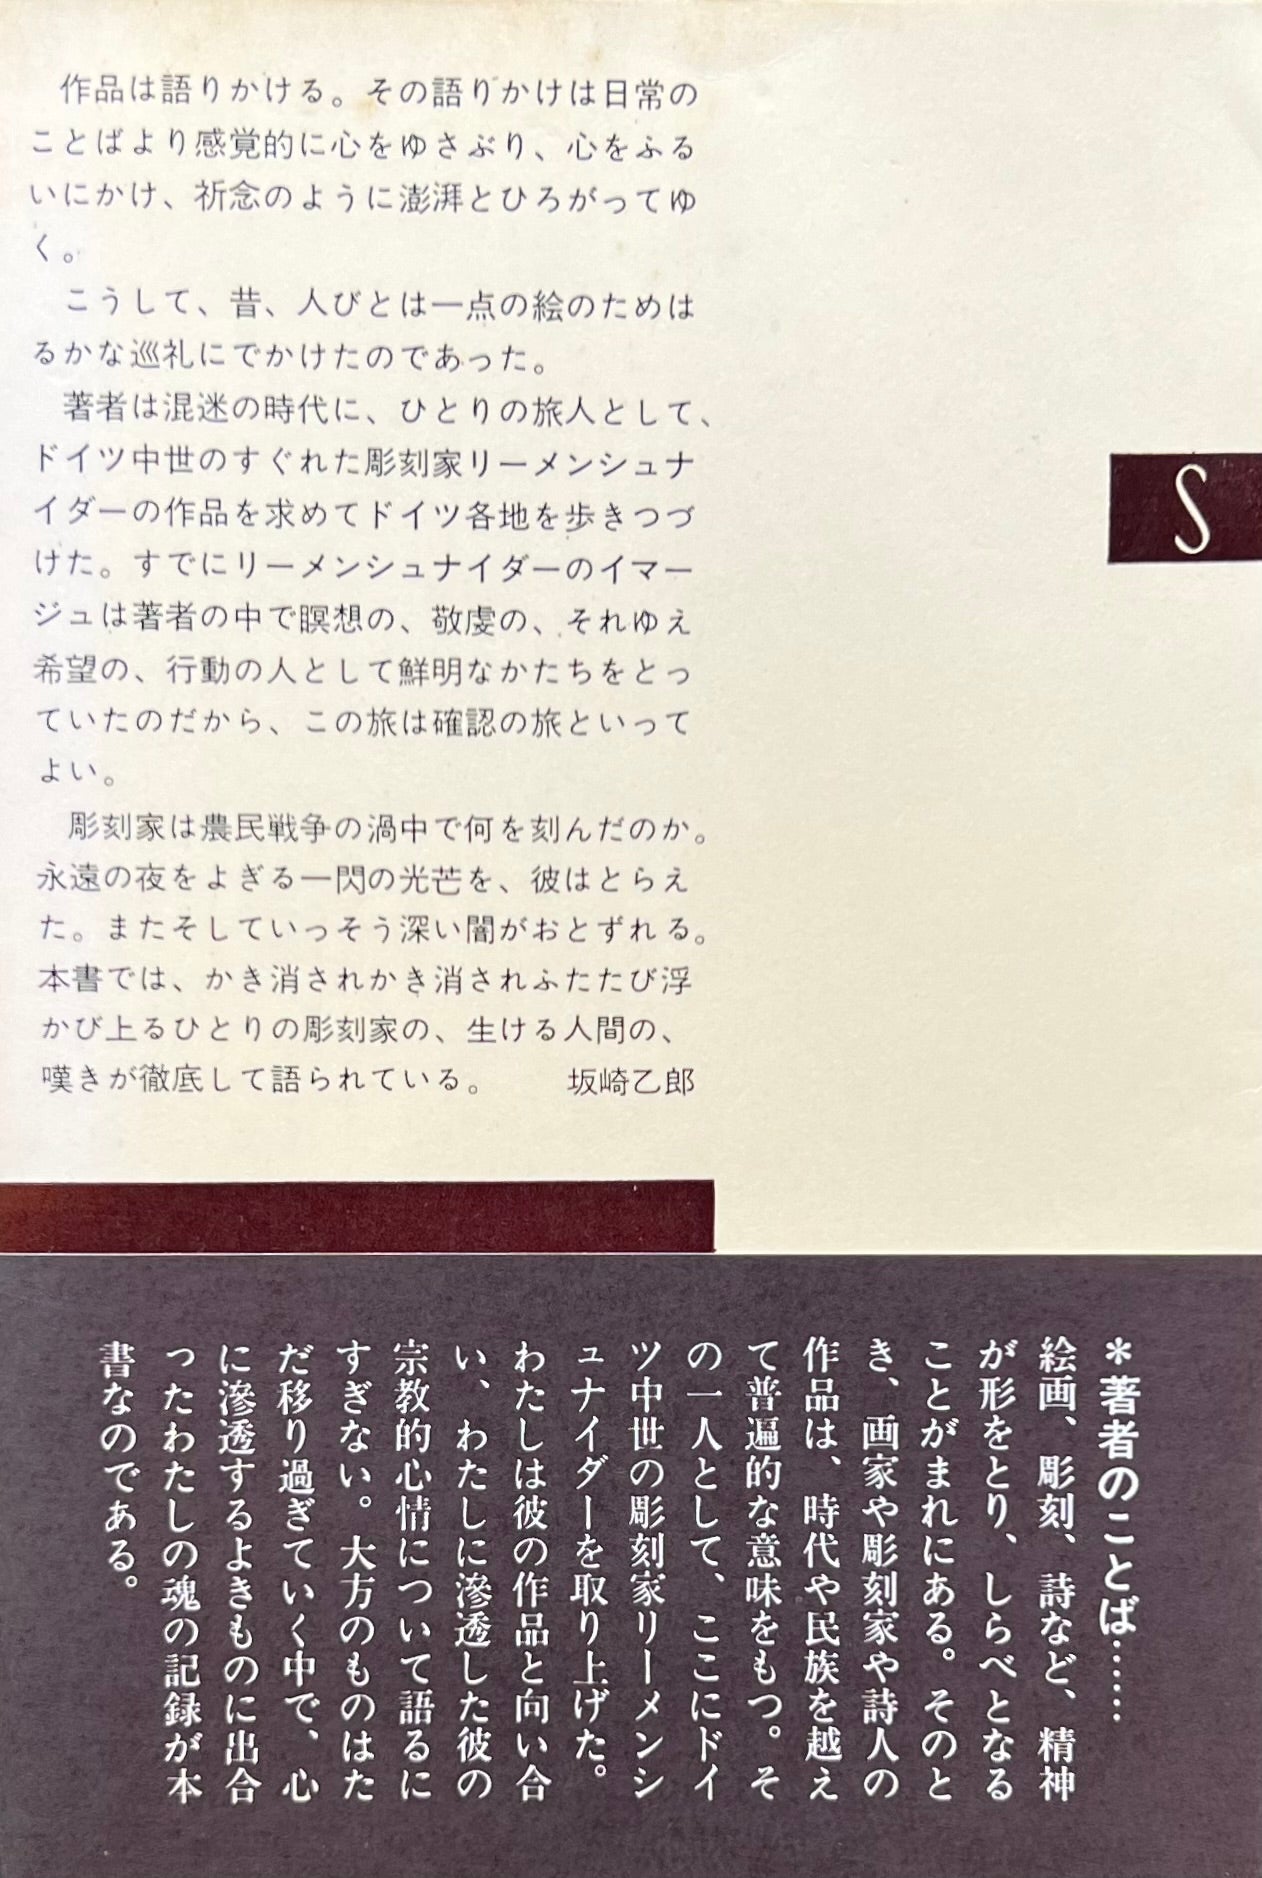 神秘の芸術 リーメンシュナイダーの世界 植田重雄 – smokebooks shop